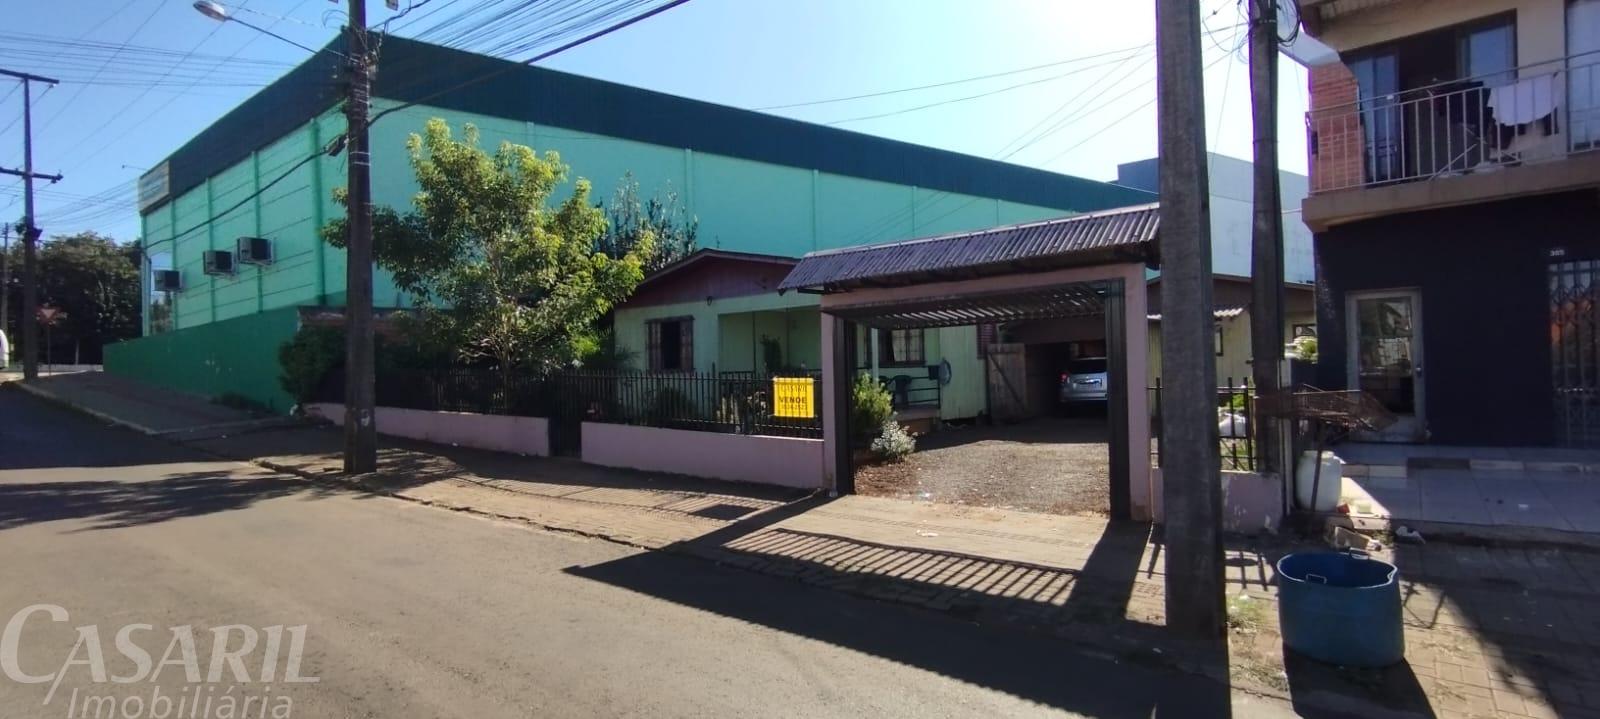 2 Casas Com 2 Dormitórios À Venda, Sadia, Francisco Beltrao - Pr